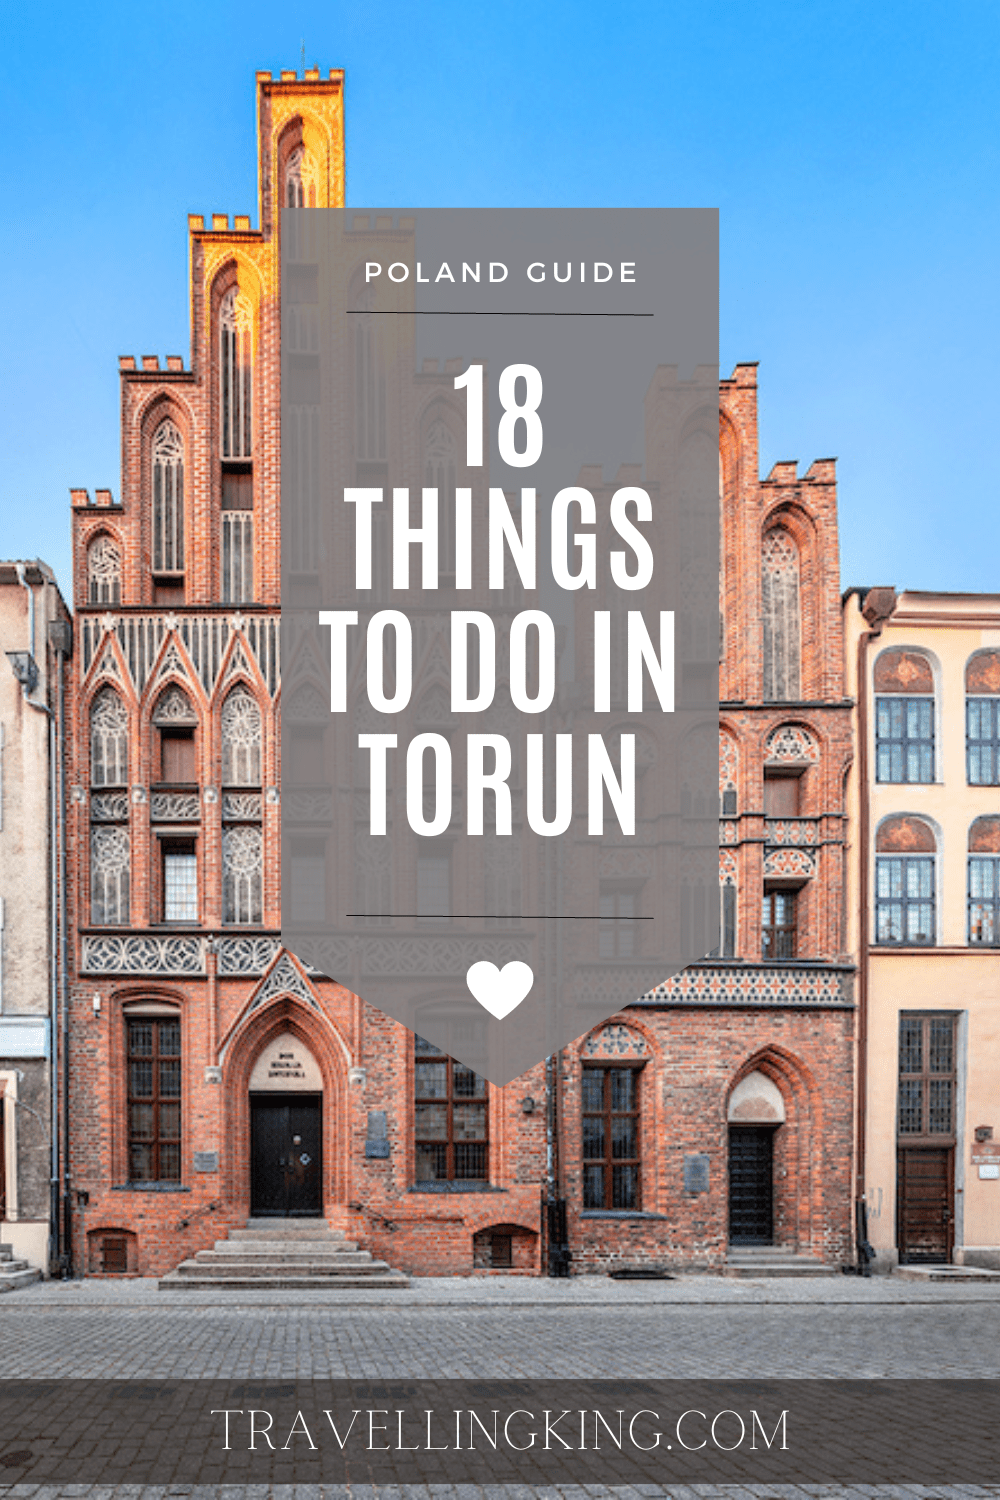 18 Things to do in Torun